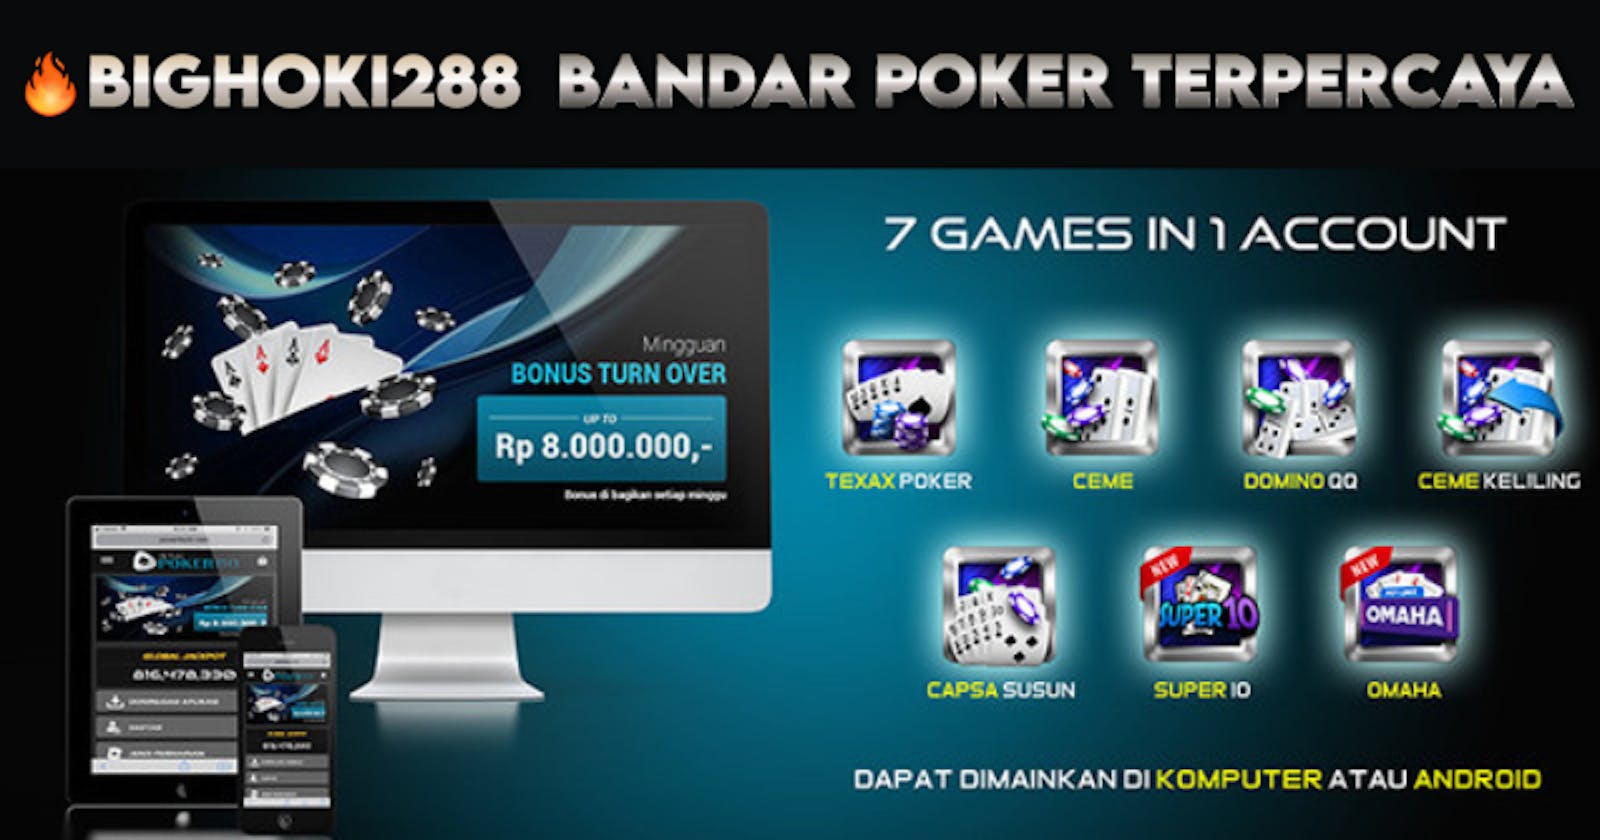 Link Situs  Bandar Poker Idn Online Bighoki288